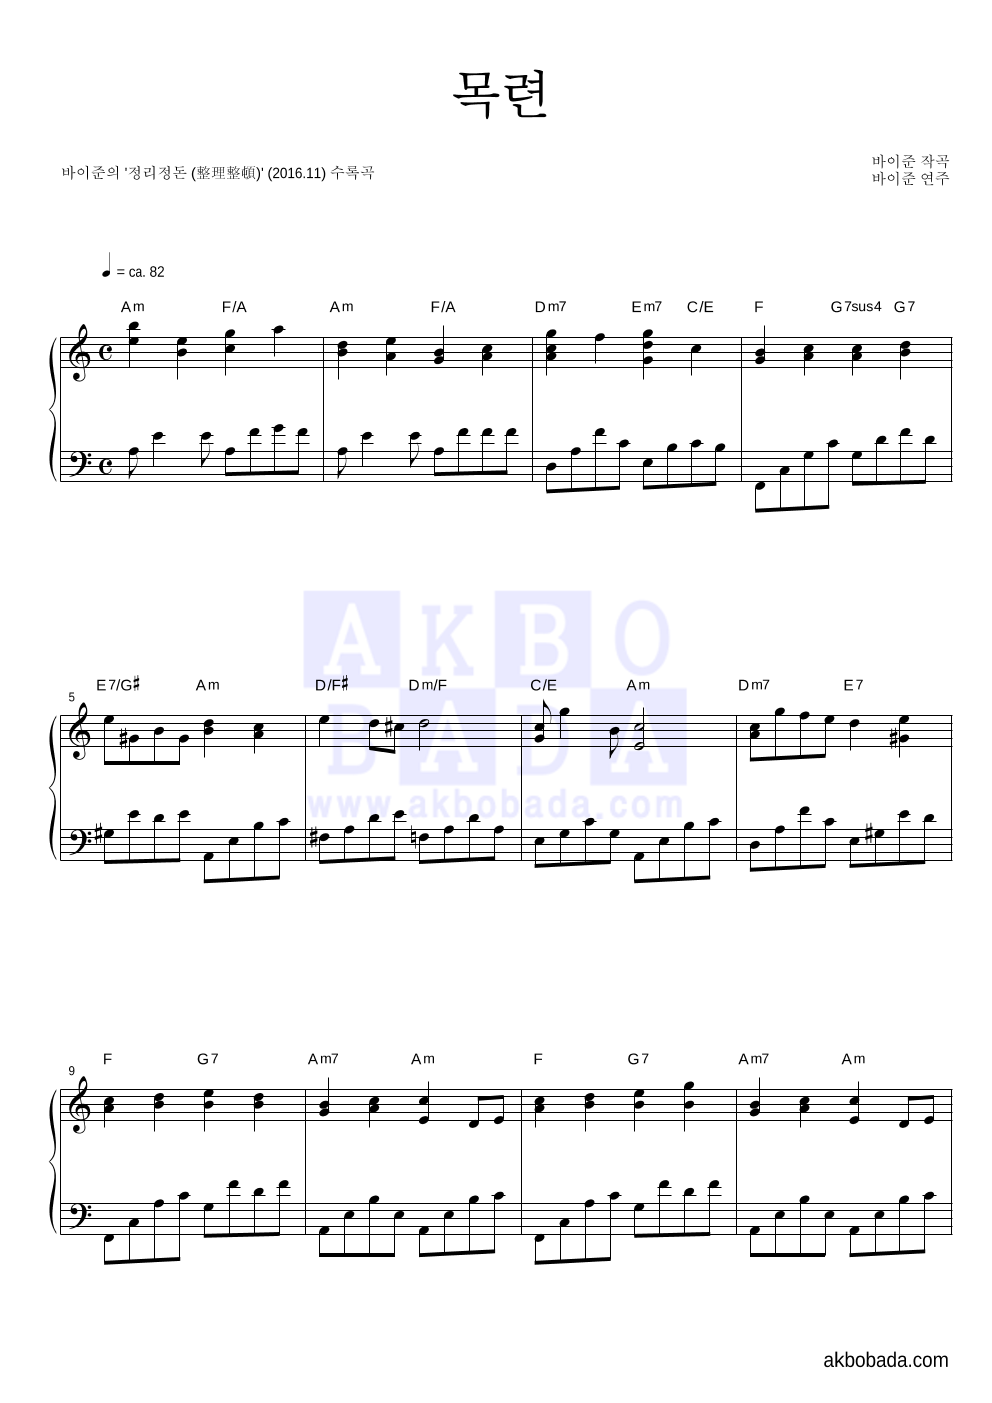 바이준 - 목련 (木蓮) 피아노 2단 악보 